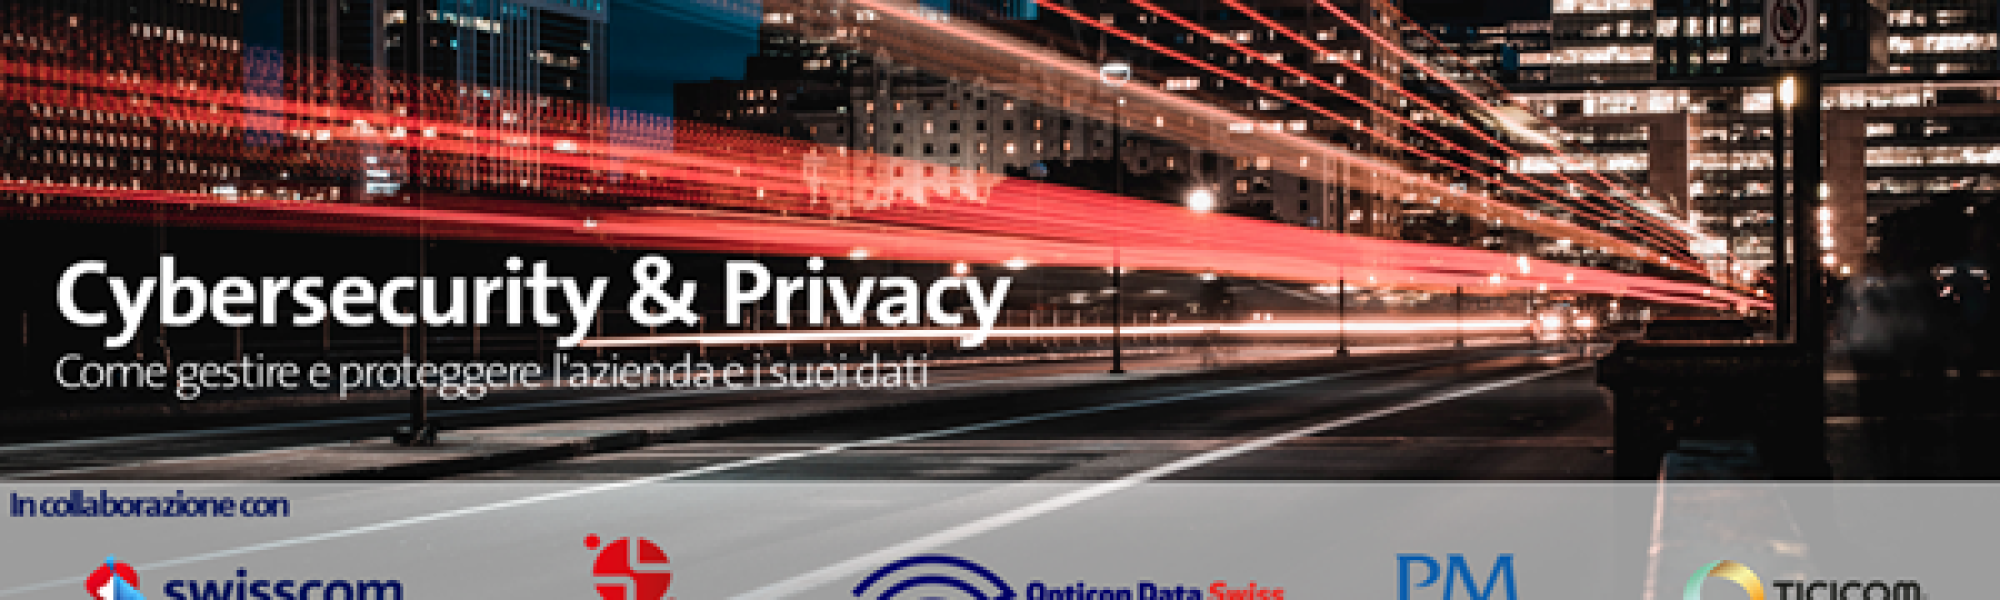 Cybersecurity e privacy, come gestire e proteggere l’azienda e i suoi dati_BANNER